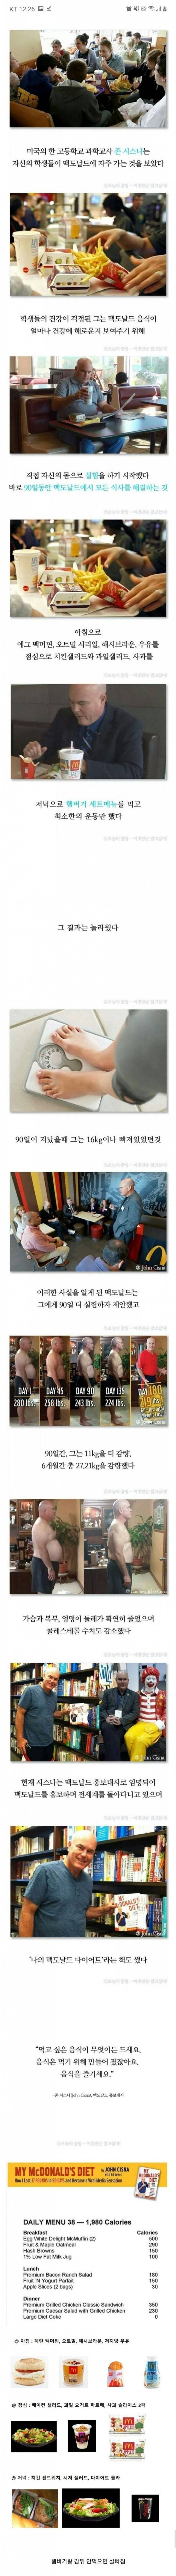 맥도날드 다이어트.JPG | 인스티즈